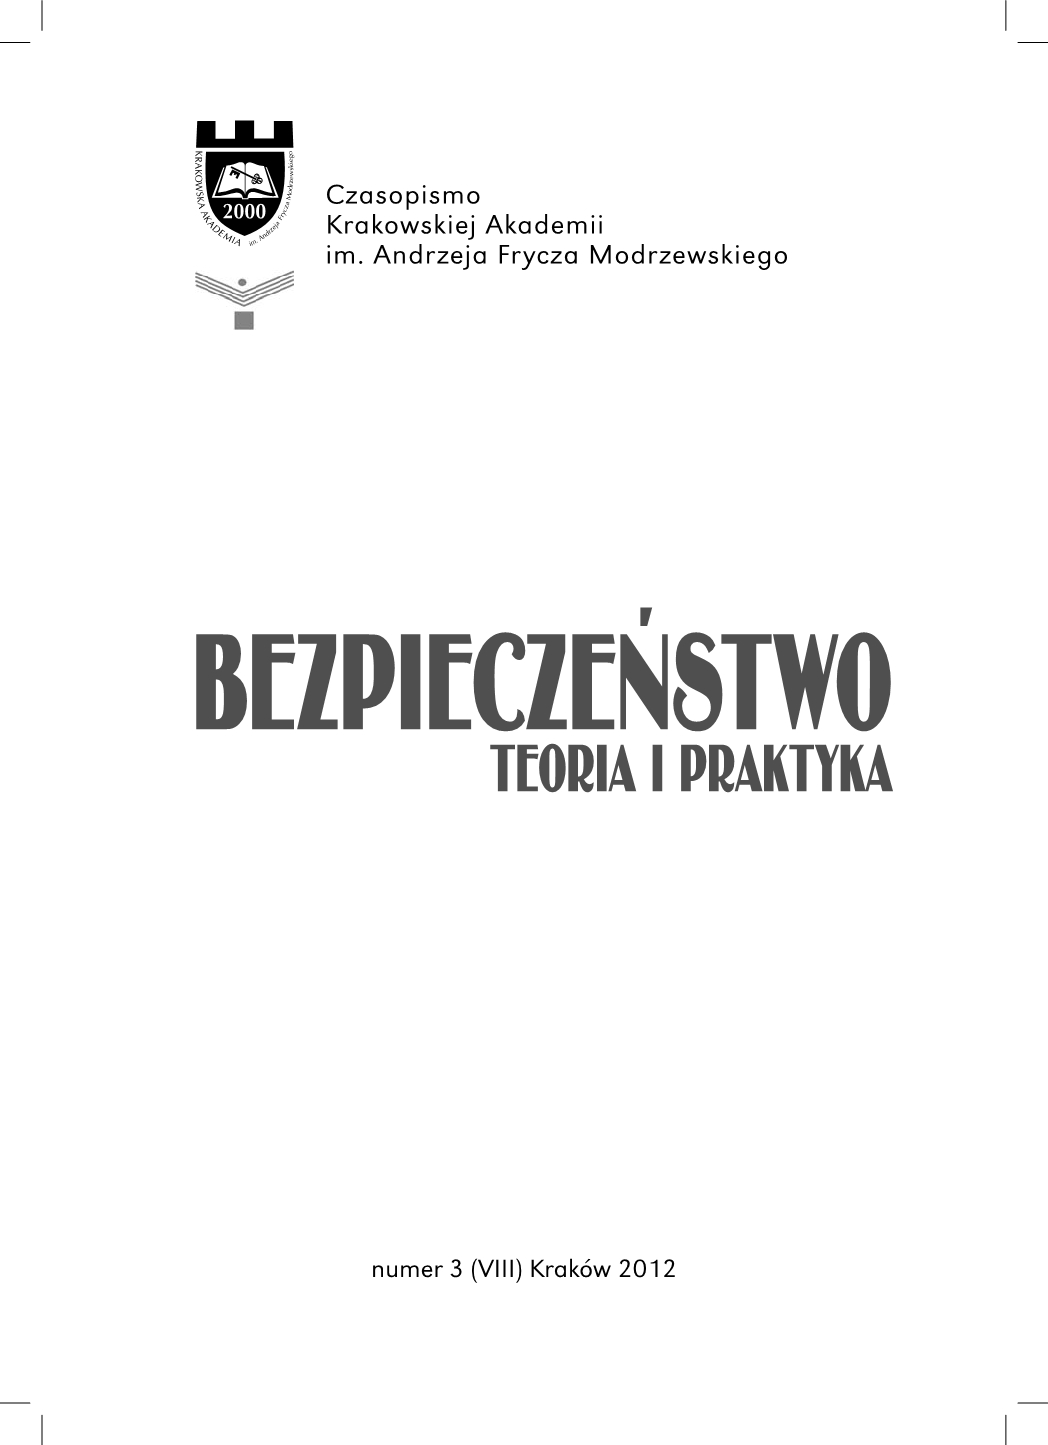 Jerzy Zdanowski, Bliski Wschód 2011: bunt czy rewolucja? - book review Cover Image